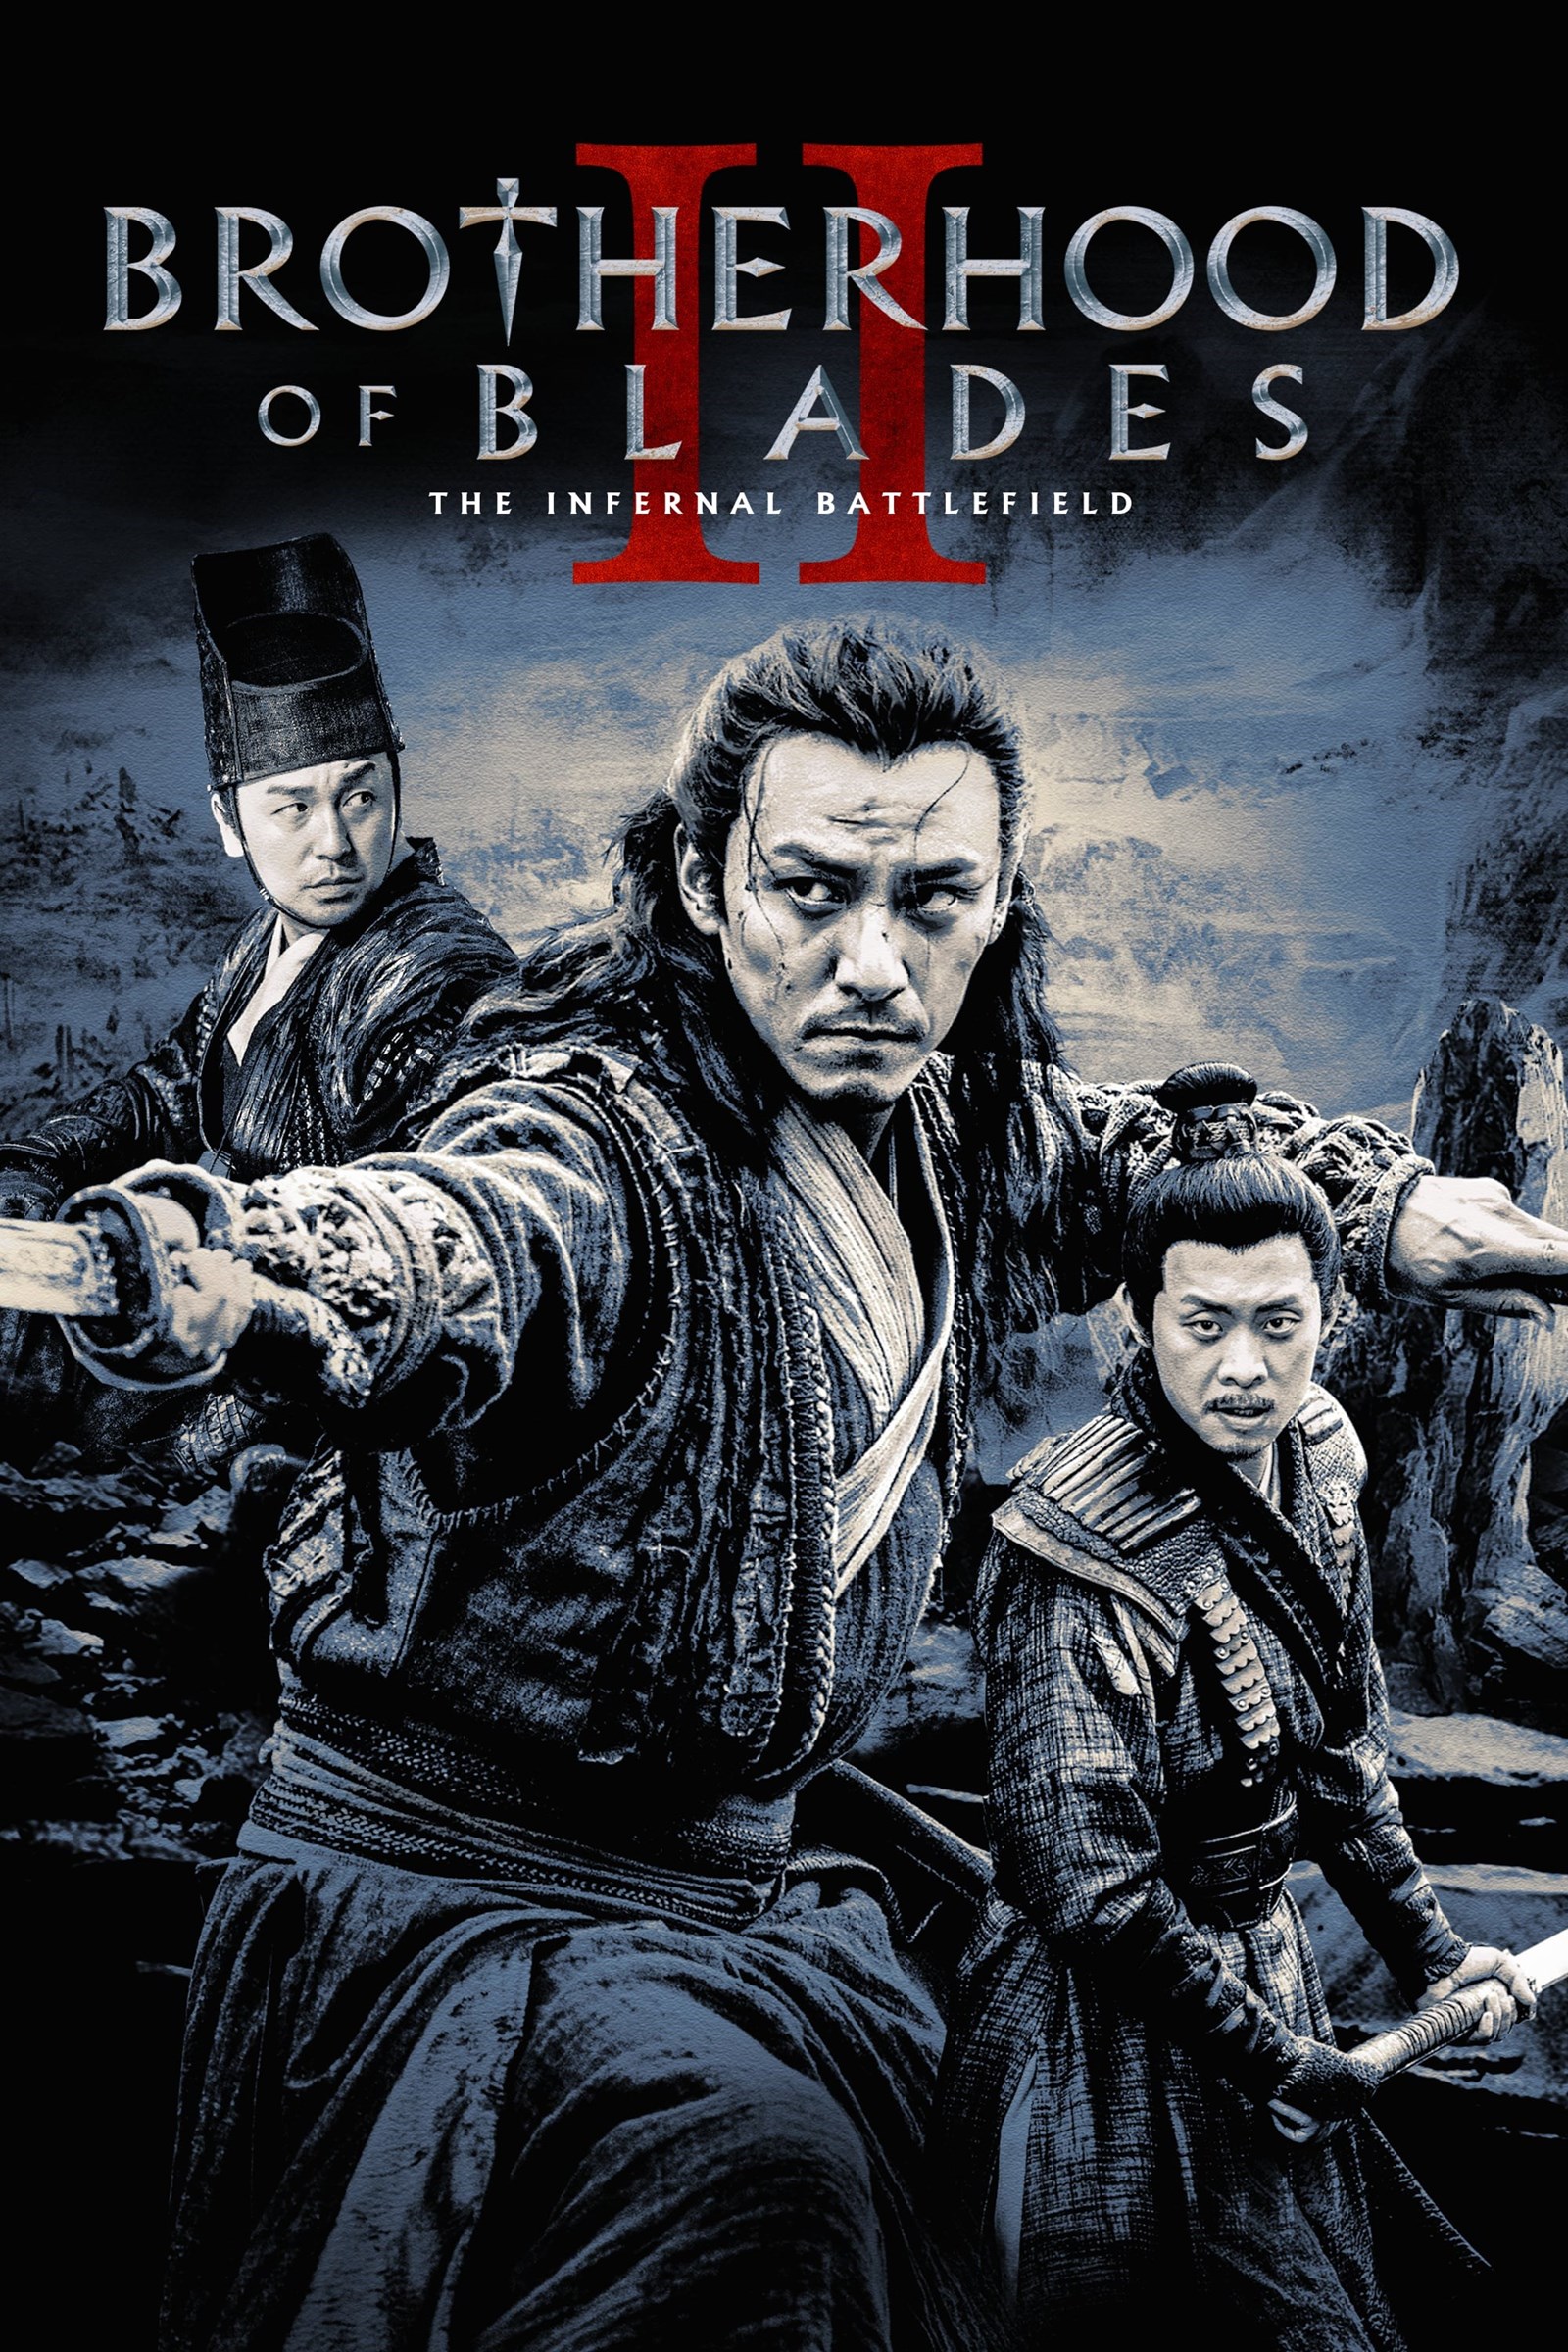 Brotherhood of blades 2: the infernal battlefield (2017)